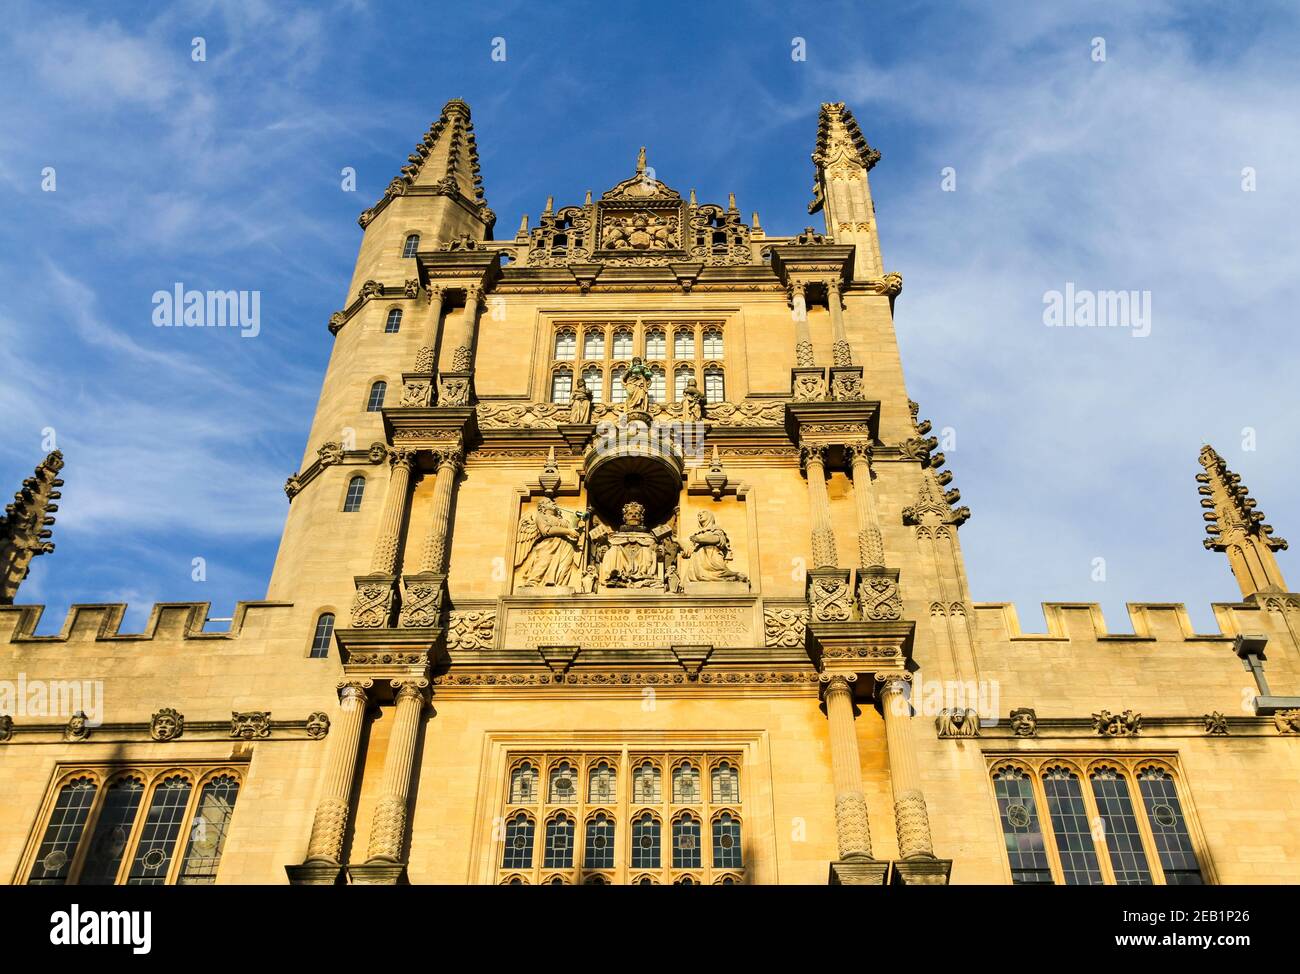 La Tour des cinq ordres, Bodleian Library Old Schools Quad. Bibliothèque de recherche principale de l'Université d'Oxford. Cinq ordres architecture classique Banque D'Images